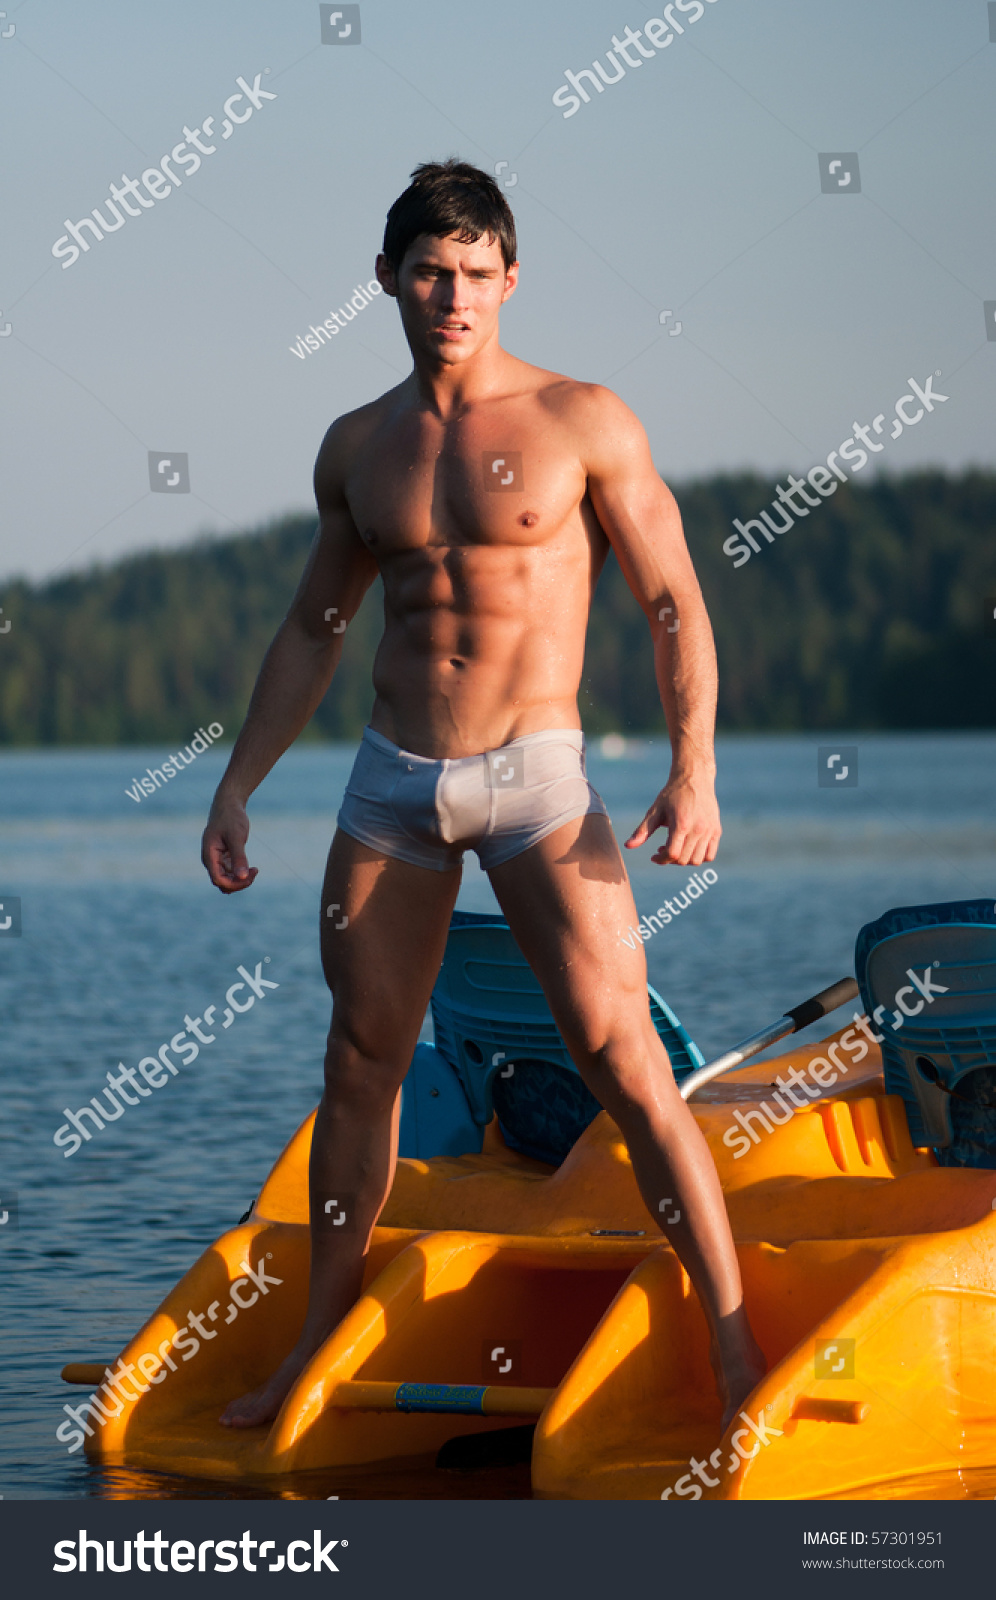 Male Model On Boat Stock Photo 57301951 | Shutterstock